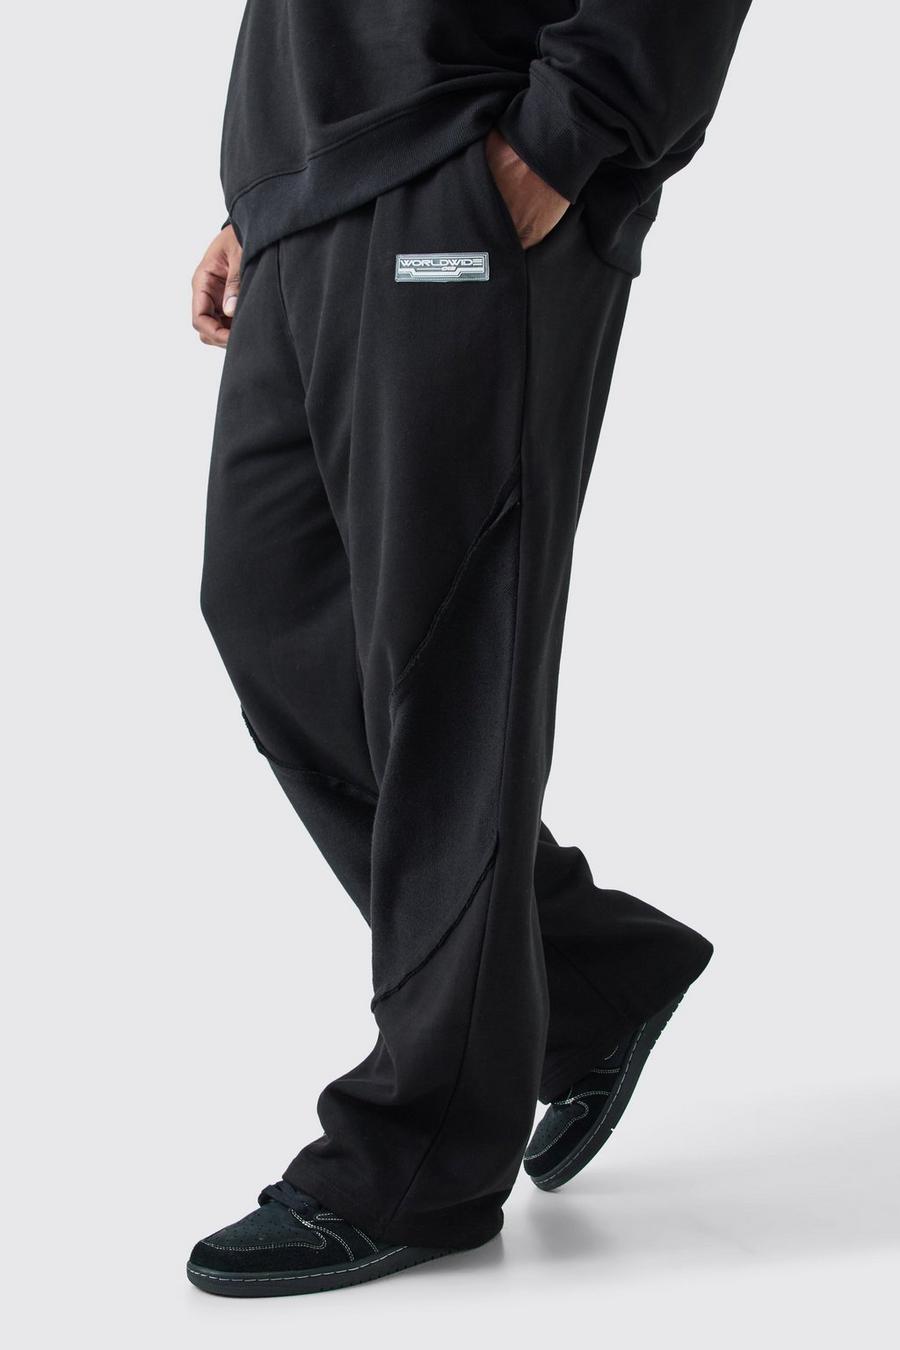 Pantalón deportivo Plus holgado con panel y bajo sin acabar, Black